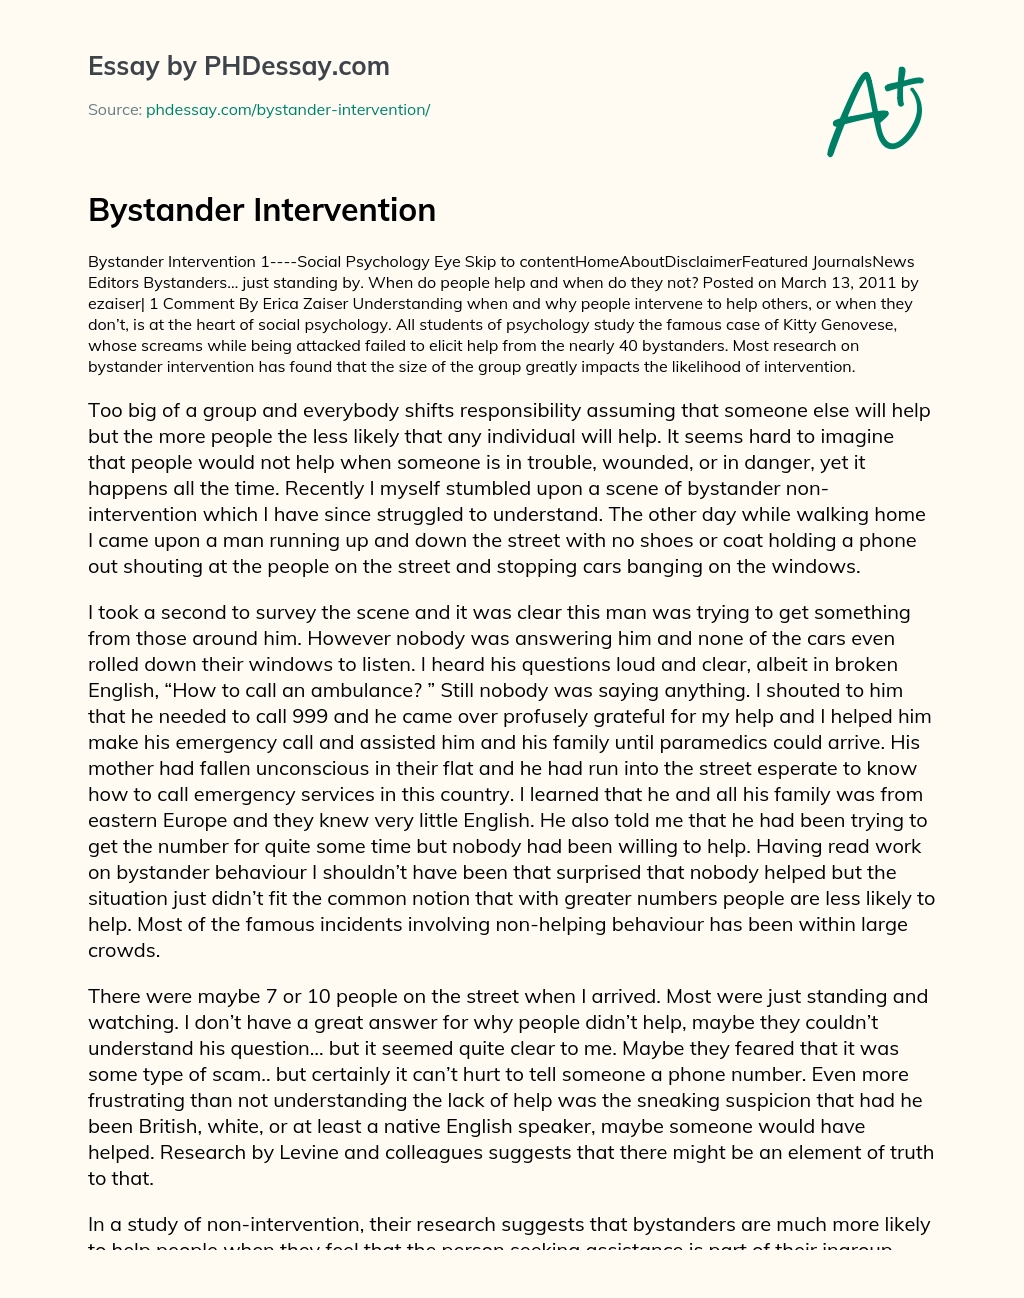 Bystander Intervention essay